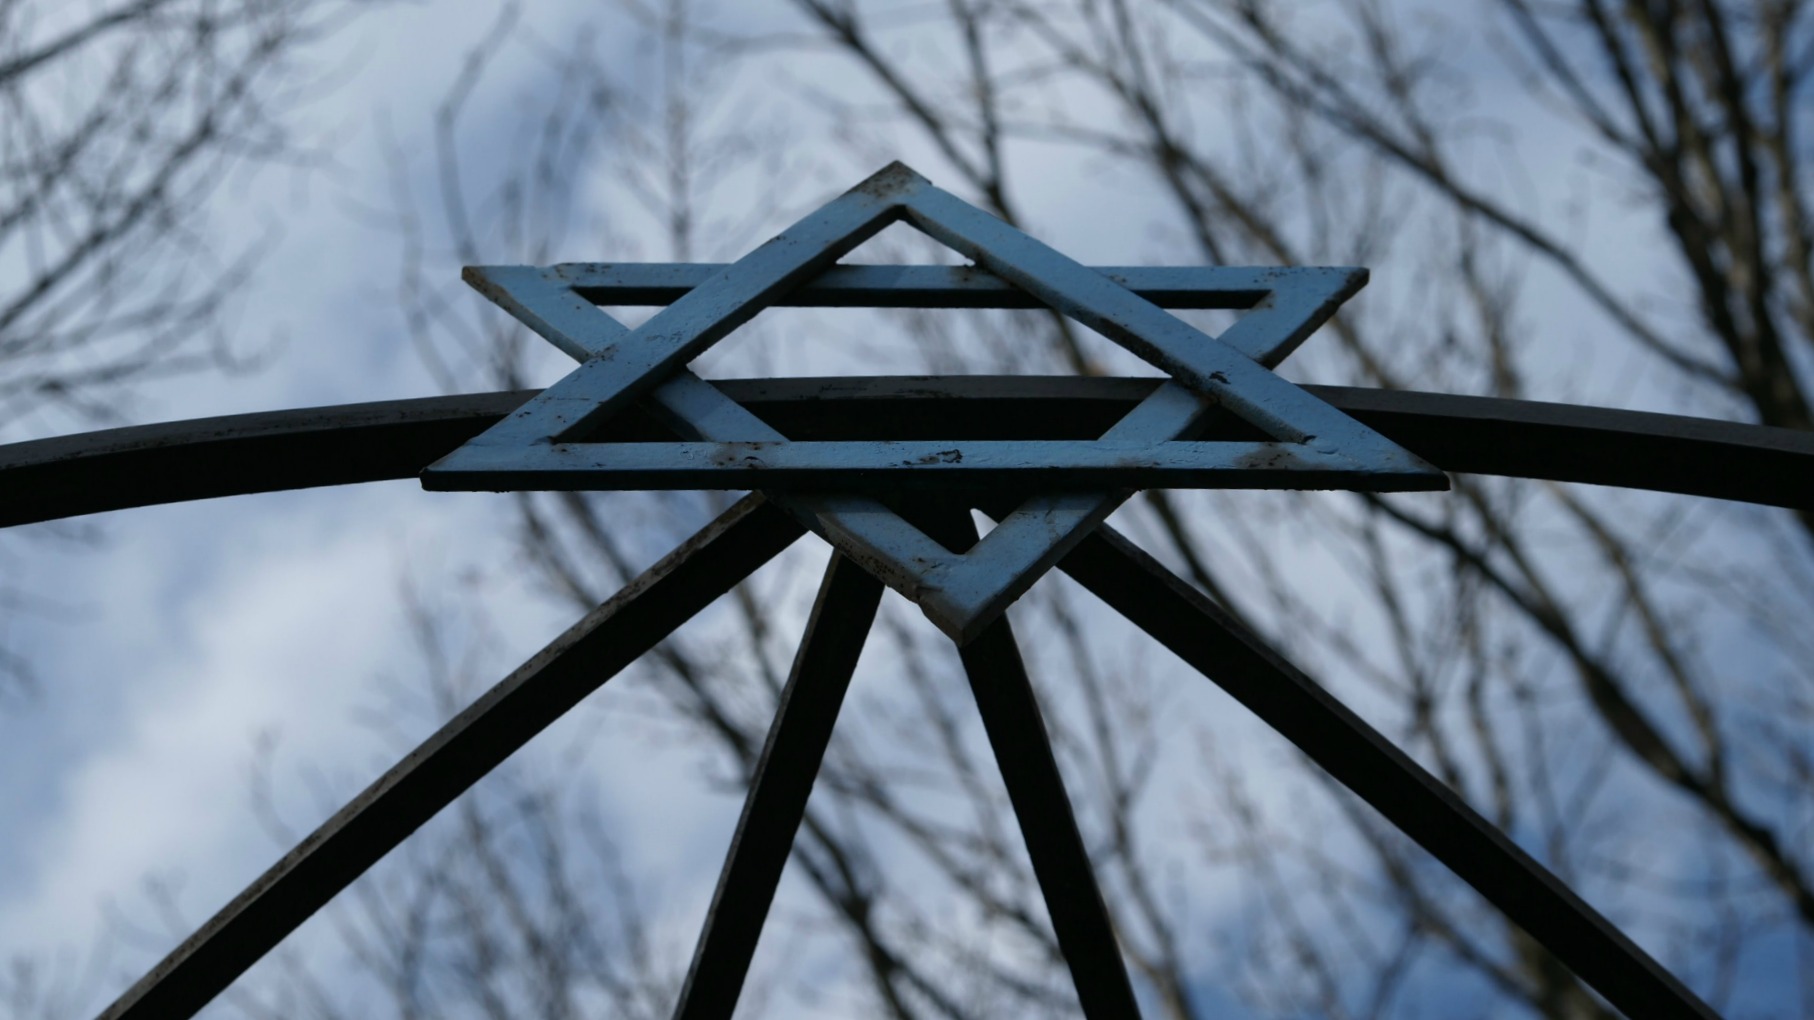 Les actes contre la communauté juive ont augmenté en Europe (Photo:Javier Kohen/Flickr/CC BY-SA 2.0)